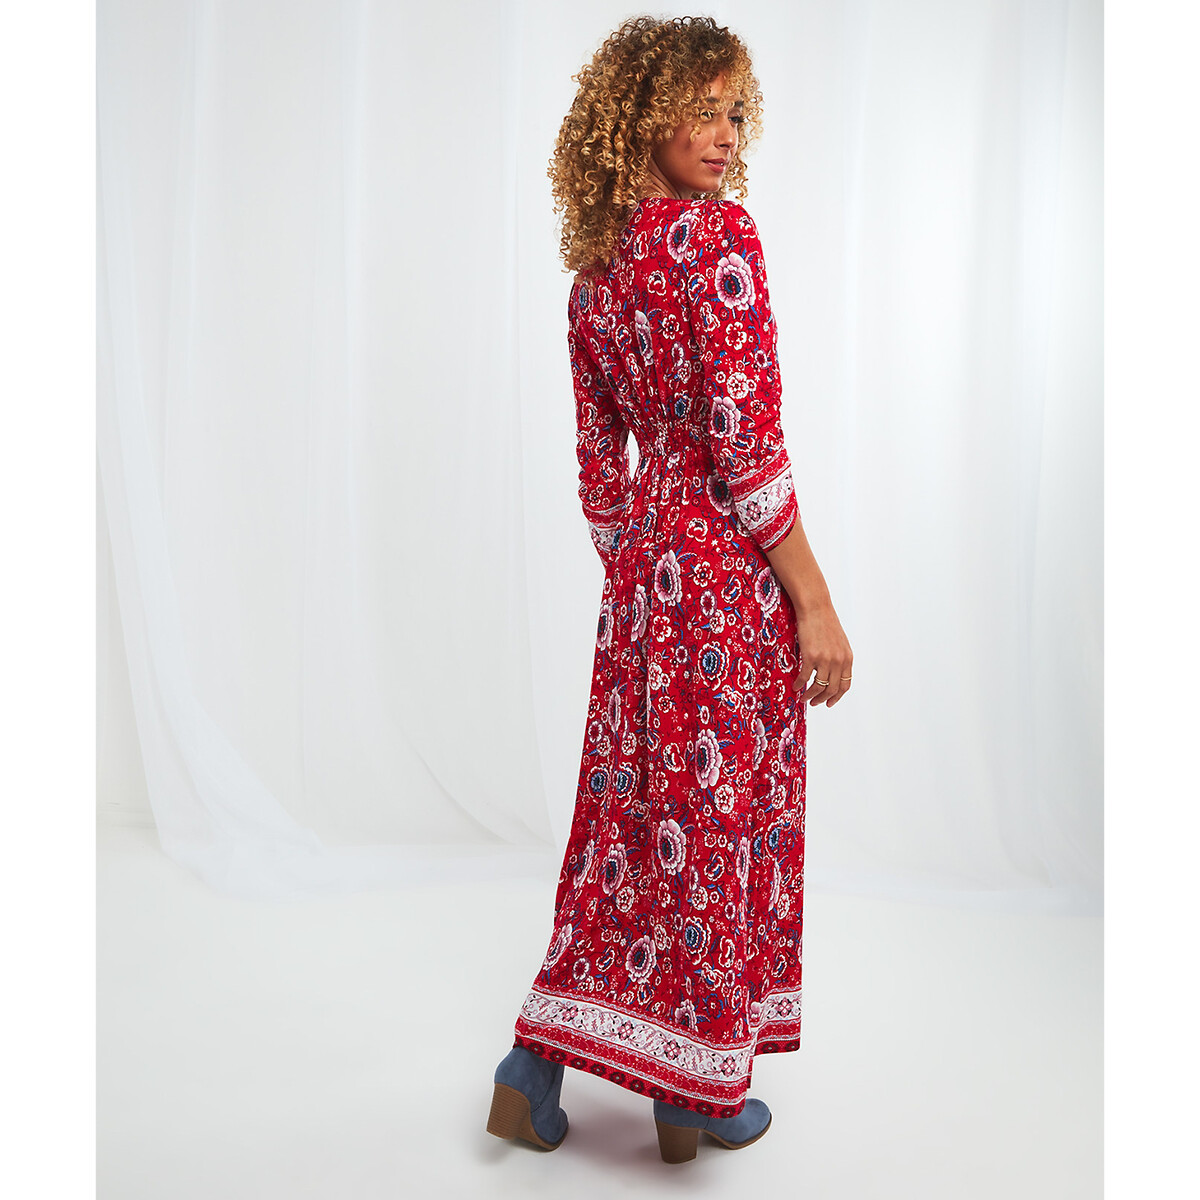 Платье JOE BROWNS Длинное с принтом и рукавами 34 48 красный, размер 48 - фото 2